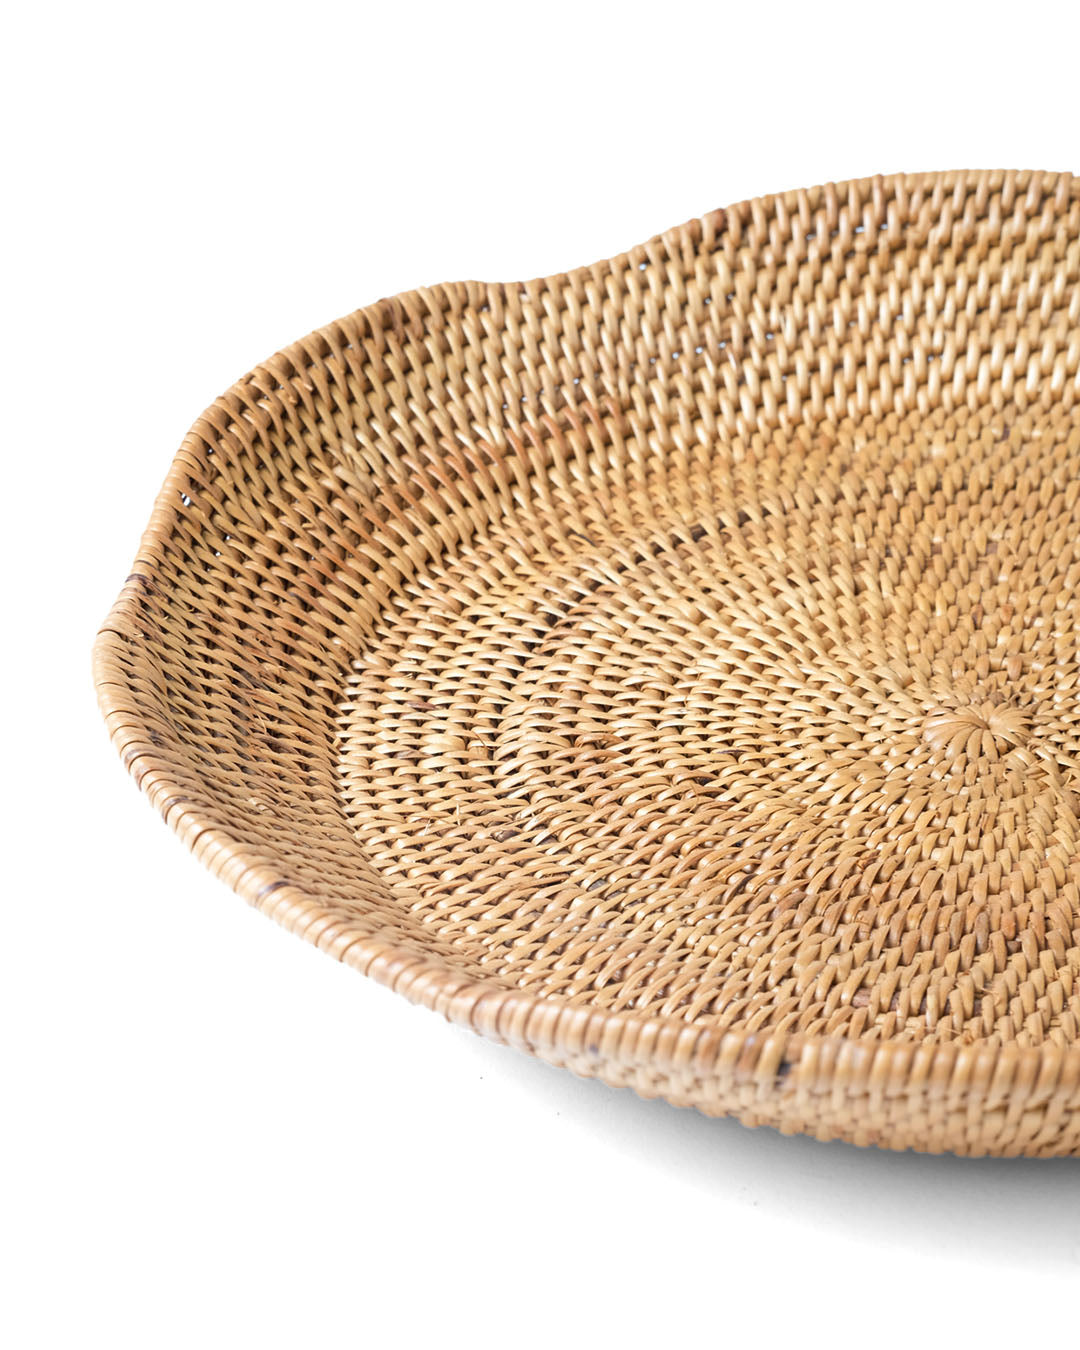 bandeja decorativa de ratán 100% natural de Halus Penkabaru redonda con forma de flor, hecho a mano por artesanos, acabado natural  con 24 cm de diámetro, fabricado en Indonesia